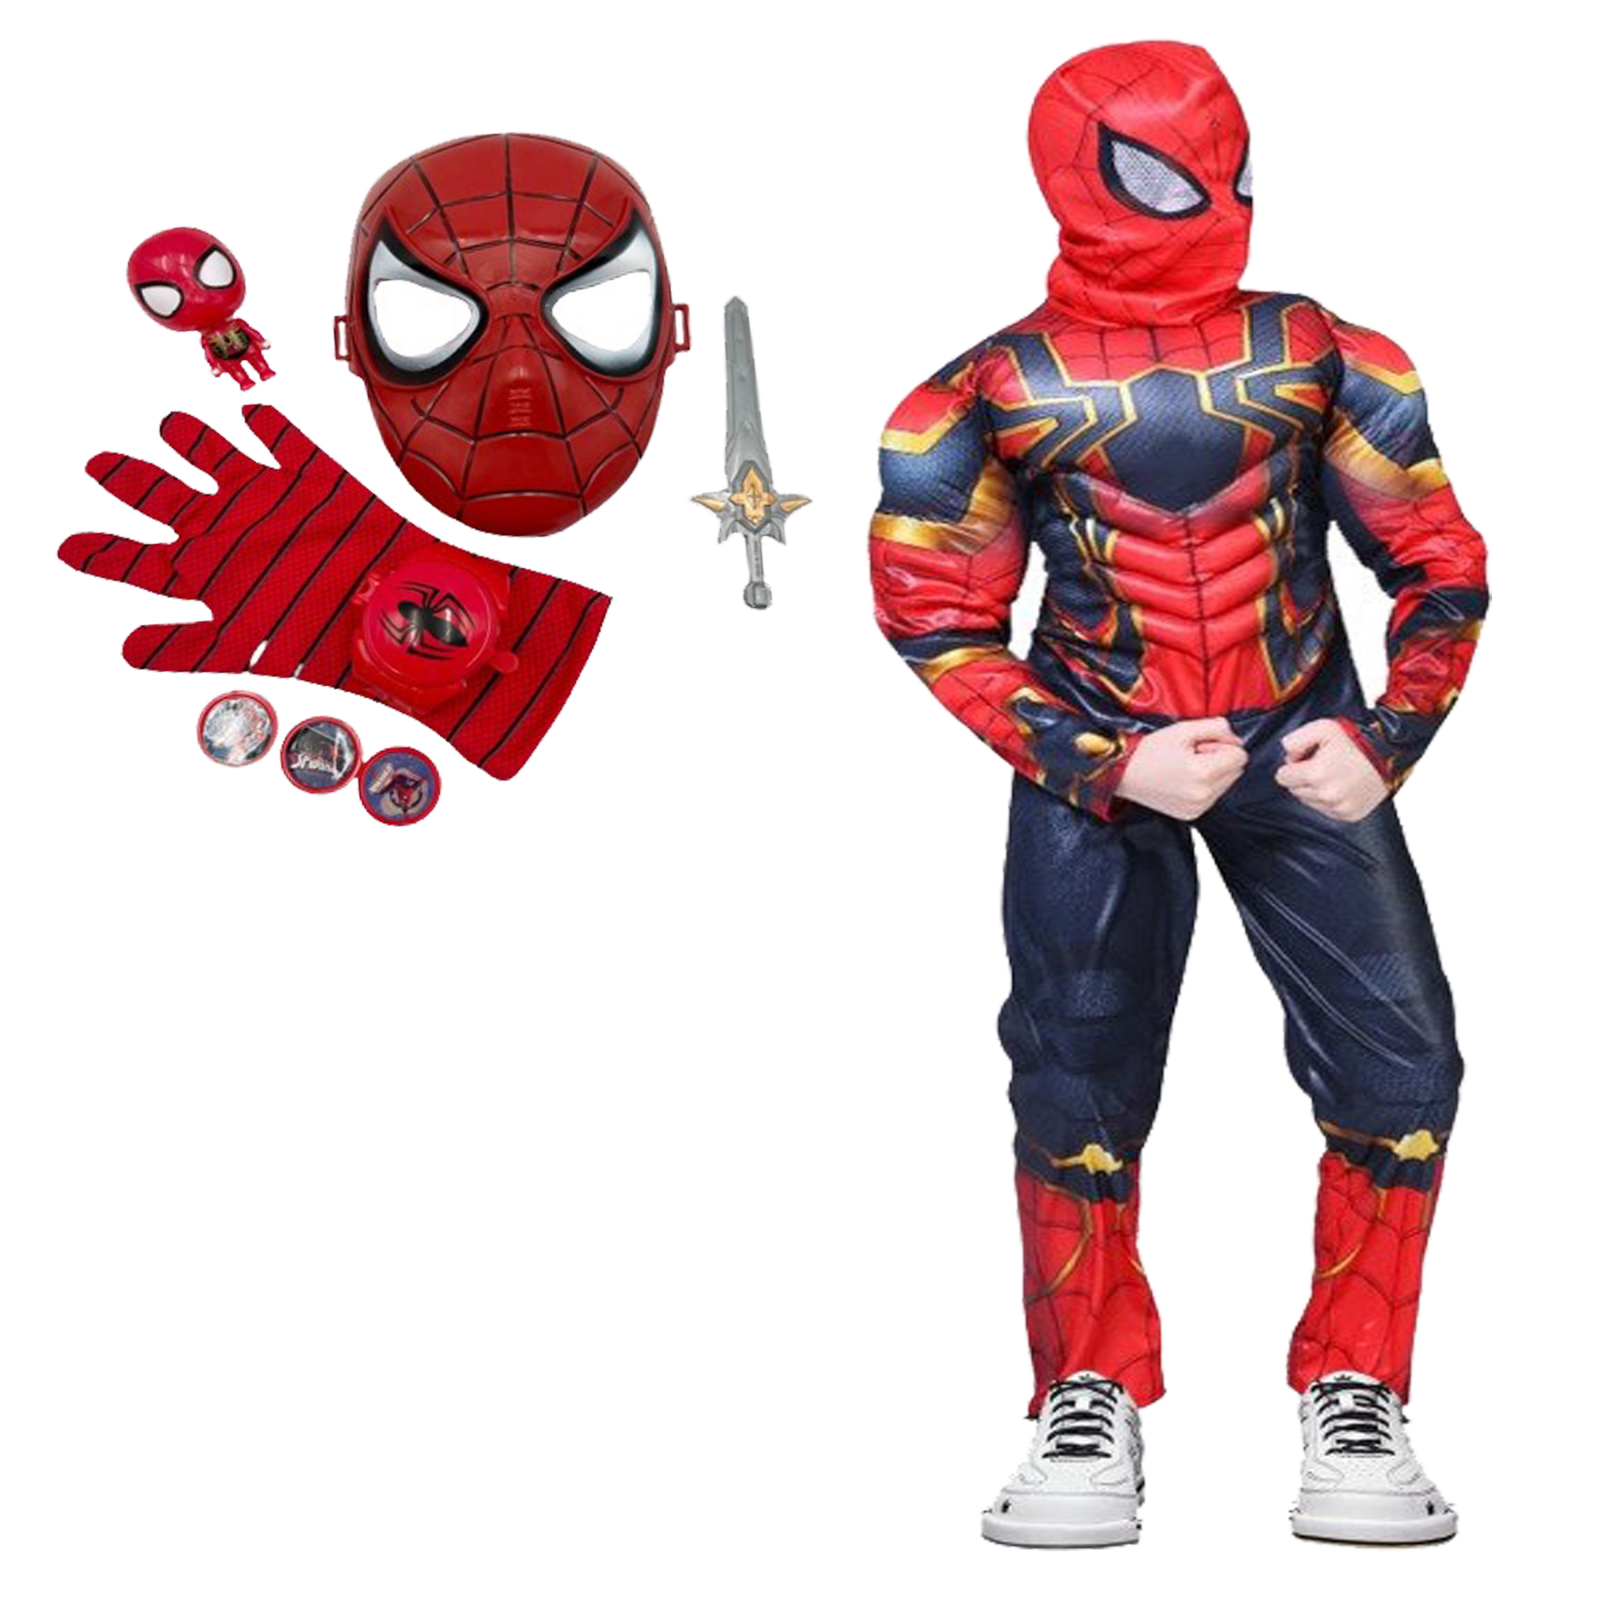 Set costum Iron Spiderman cu manusa si accesorii pentru baieti 130-140 cm 7-9 ani